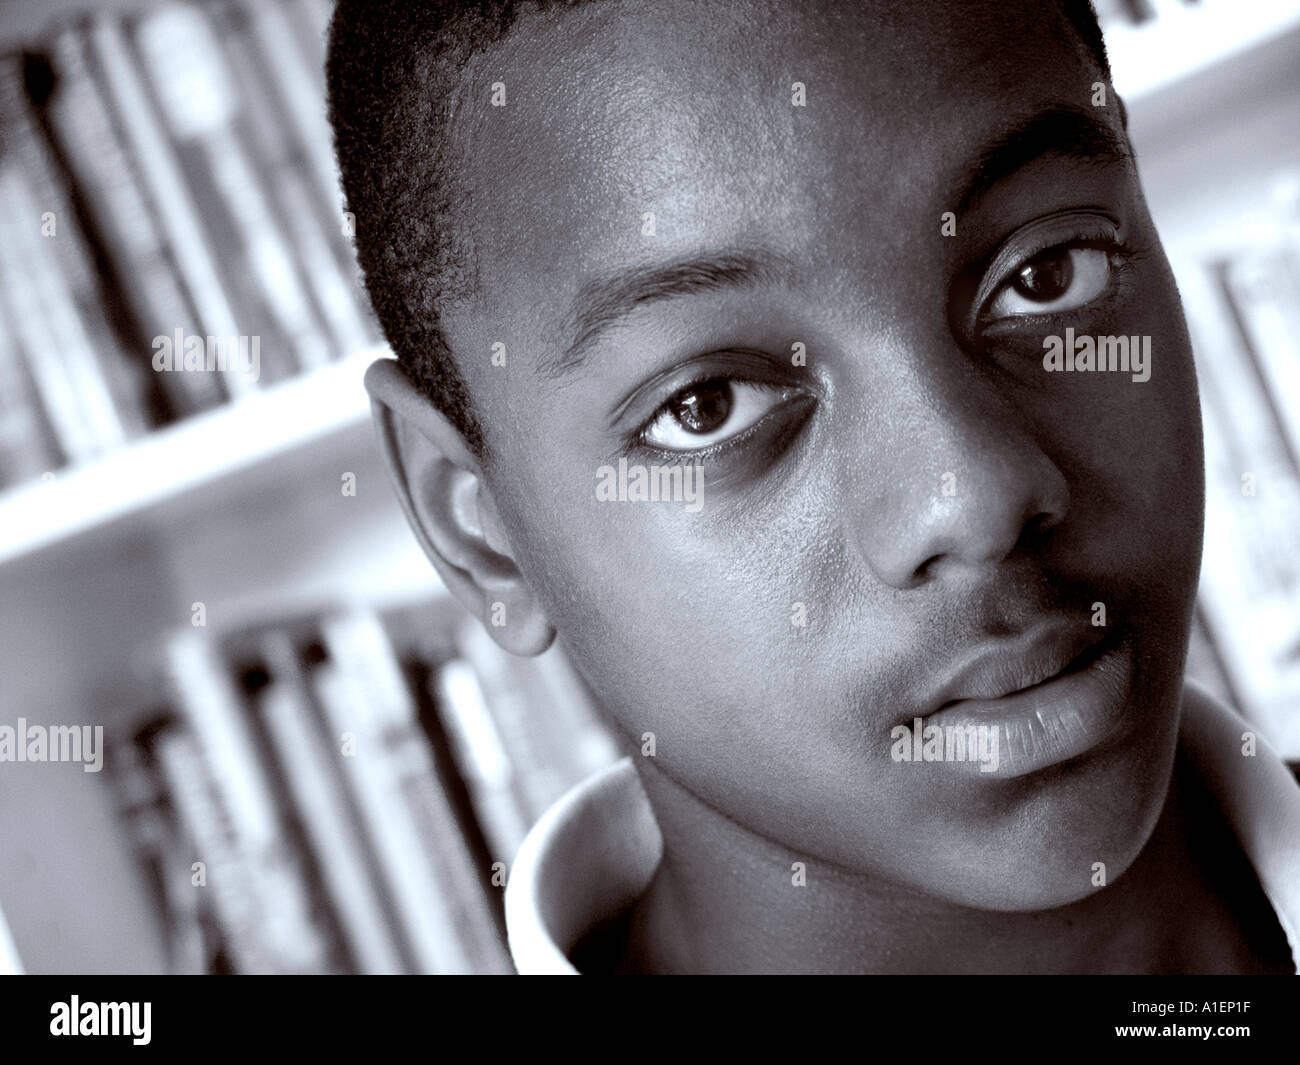 AFRIKANISCHER JUNGE STUDENT 13-15 Jahre Nahaufnahme fesselndes, kraftvolles Schwarz-Weiß-Porträt eines jungen schwarzen männlichen Schülers in der Schulbibliothek Stockfoto